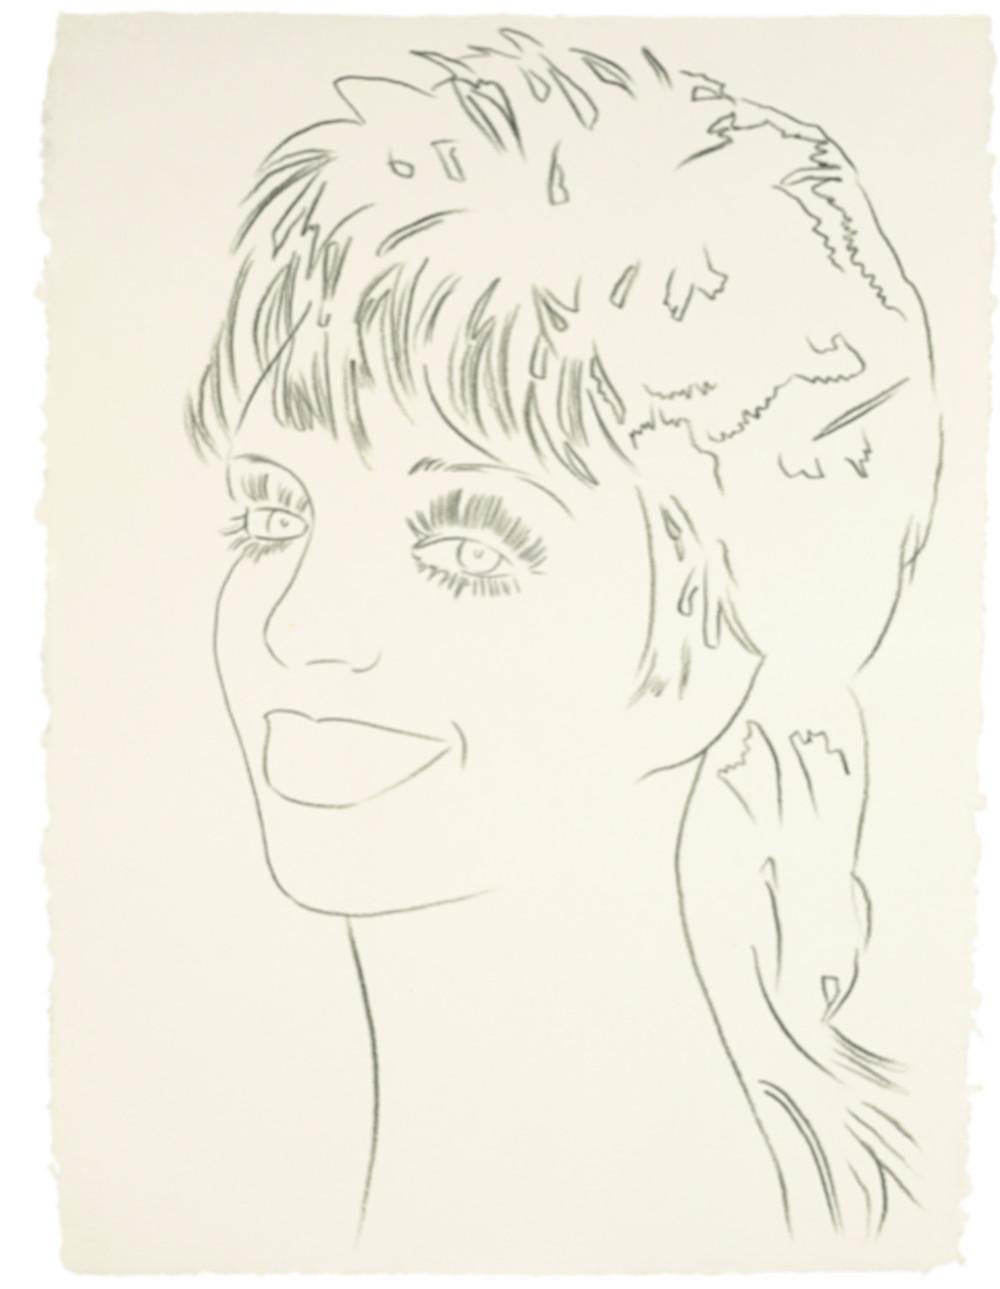 Andy Warhol Portrait – Liza Minnelli: Liza Minnelli